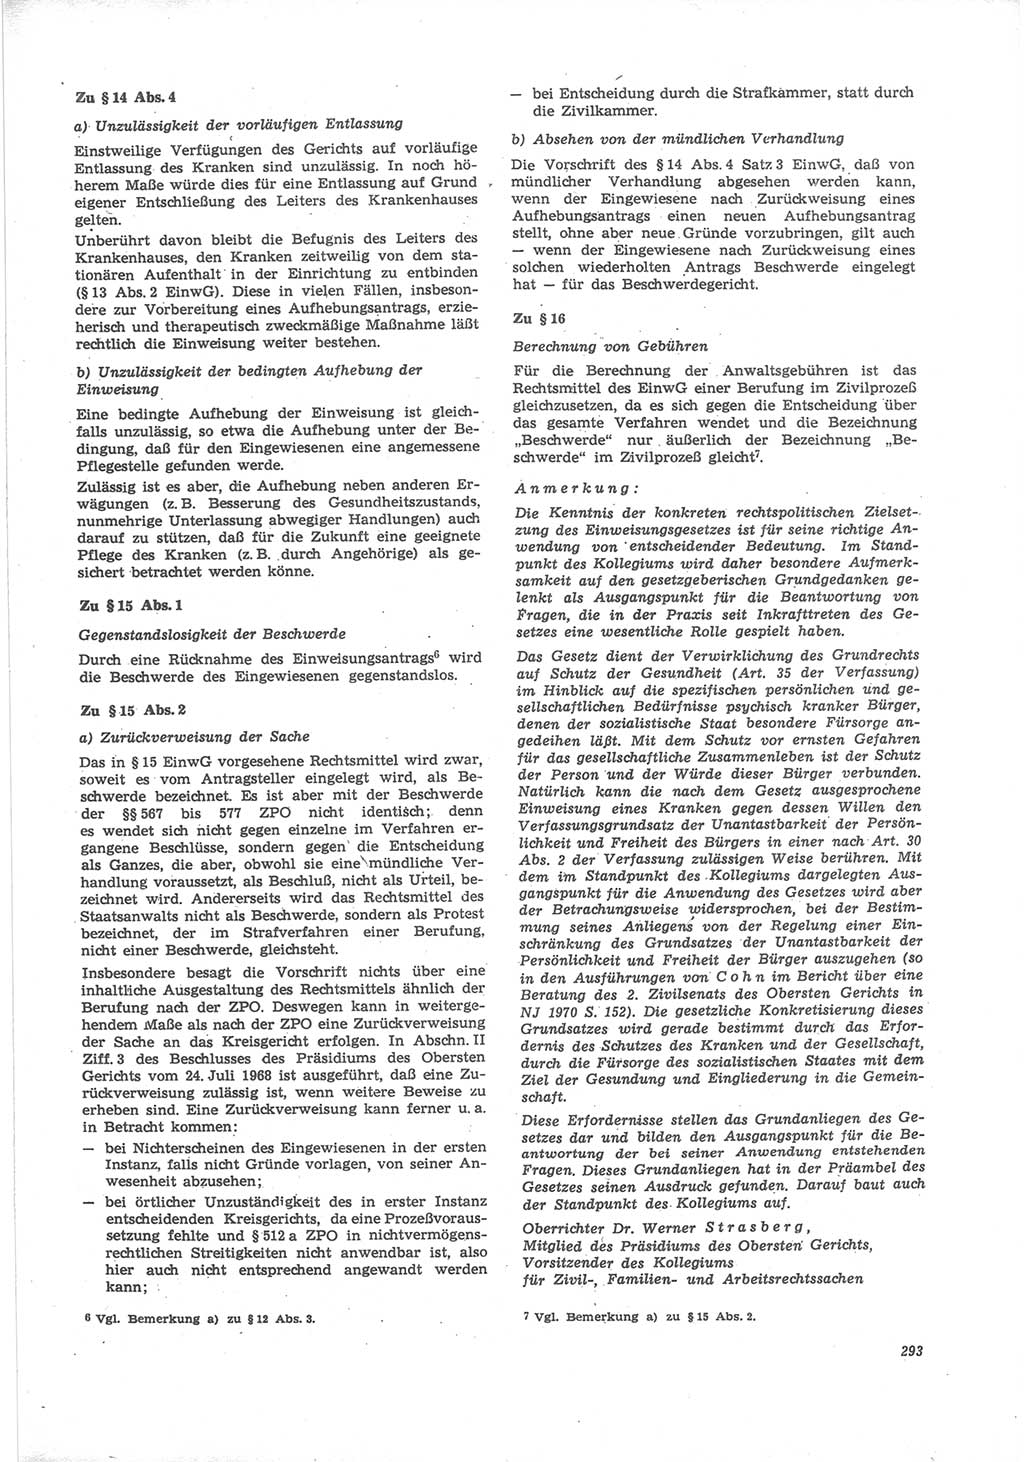 Neue Justiz (NJ), Zeitschrift für Recht und Rechtswissenschaft [Deutsche Demokratische Republik (DDR)], 24. Jahrgang 1970, Seite 293 (NJ DDR 1970, S. 293)